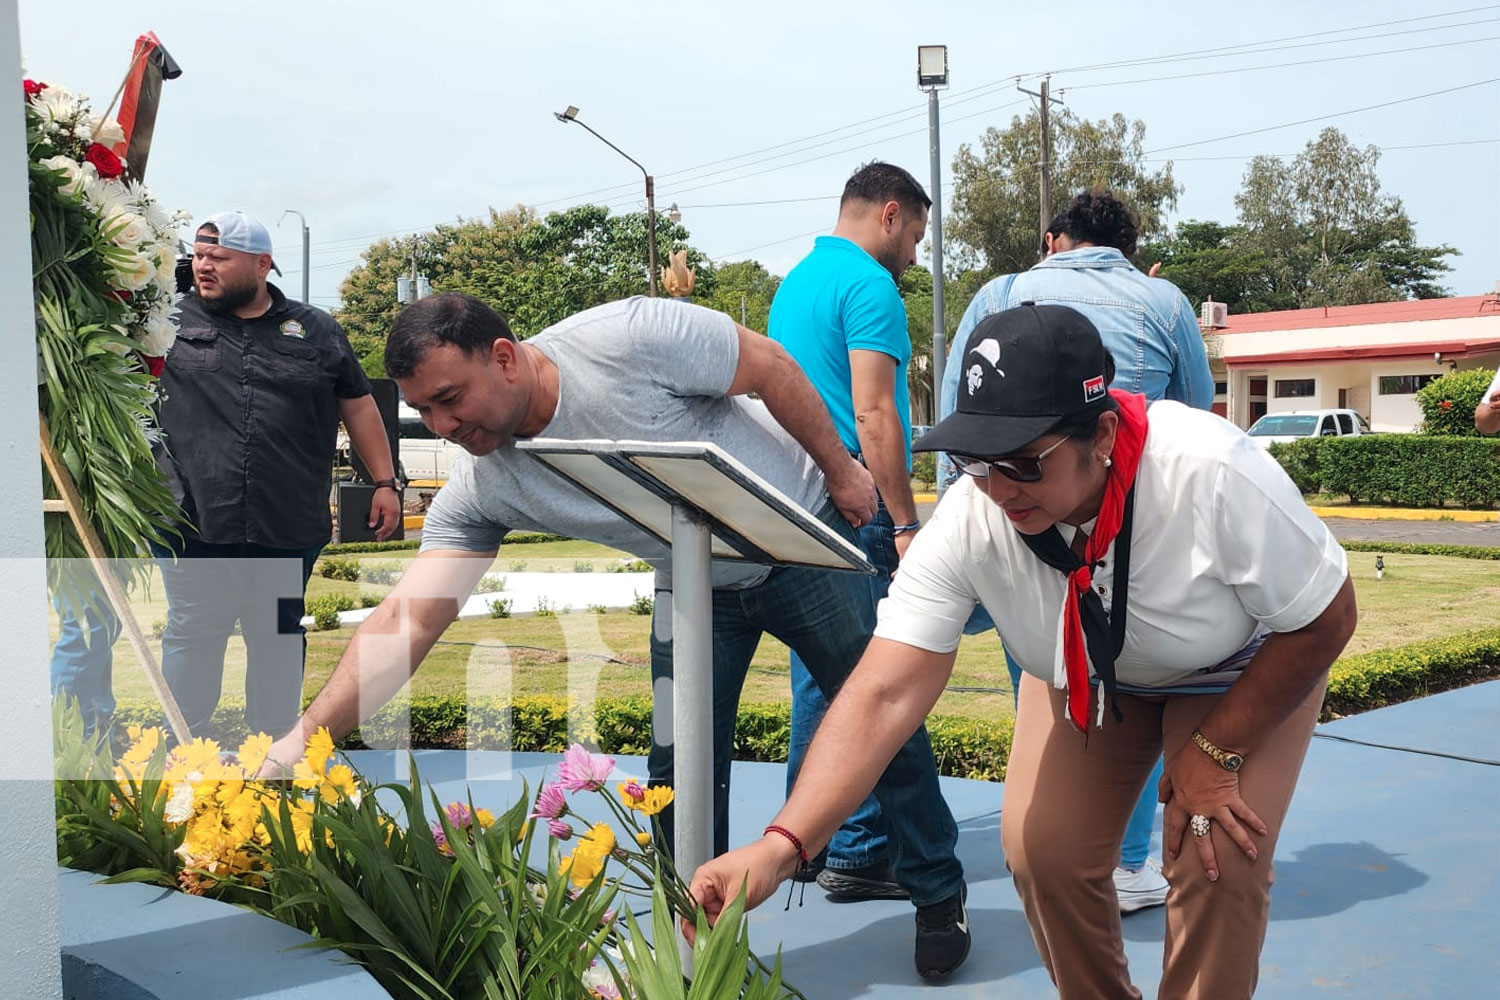 Foto: Diferentes municipios del país conmemoran el natalicio del Comandante Carlos Fonseca Amador